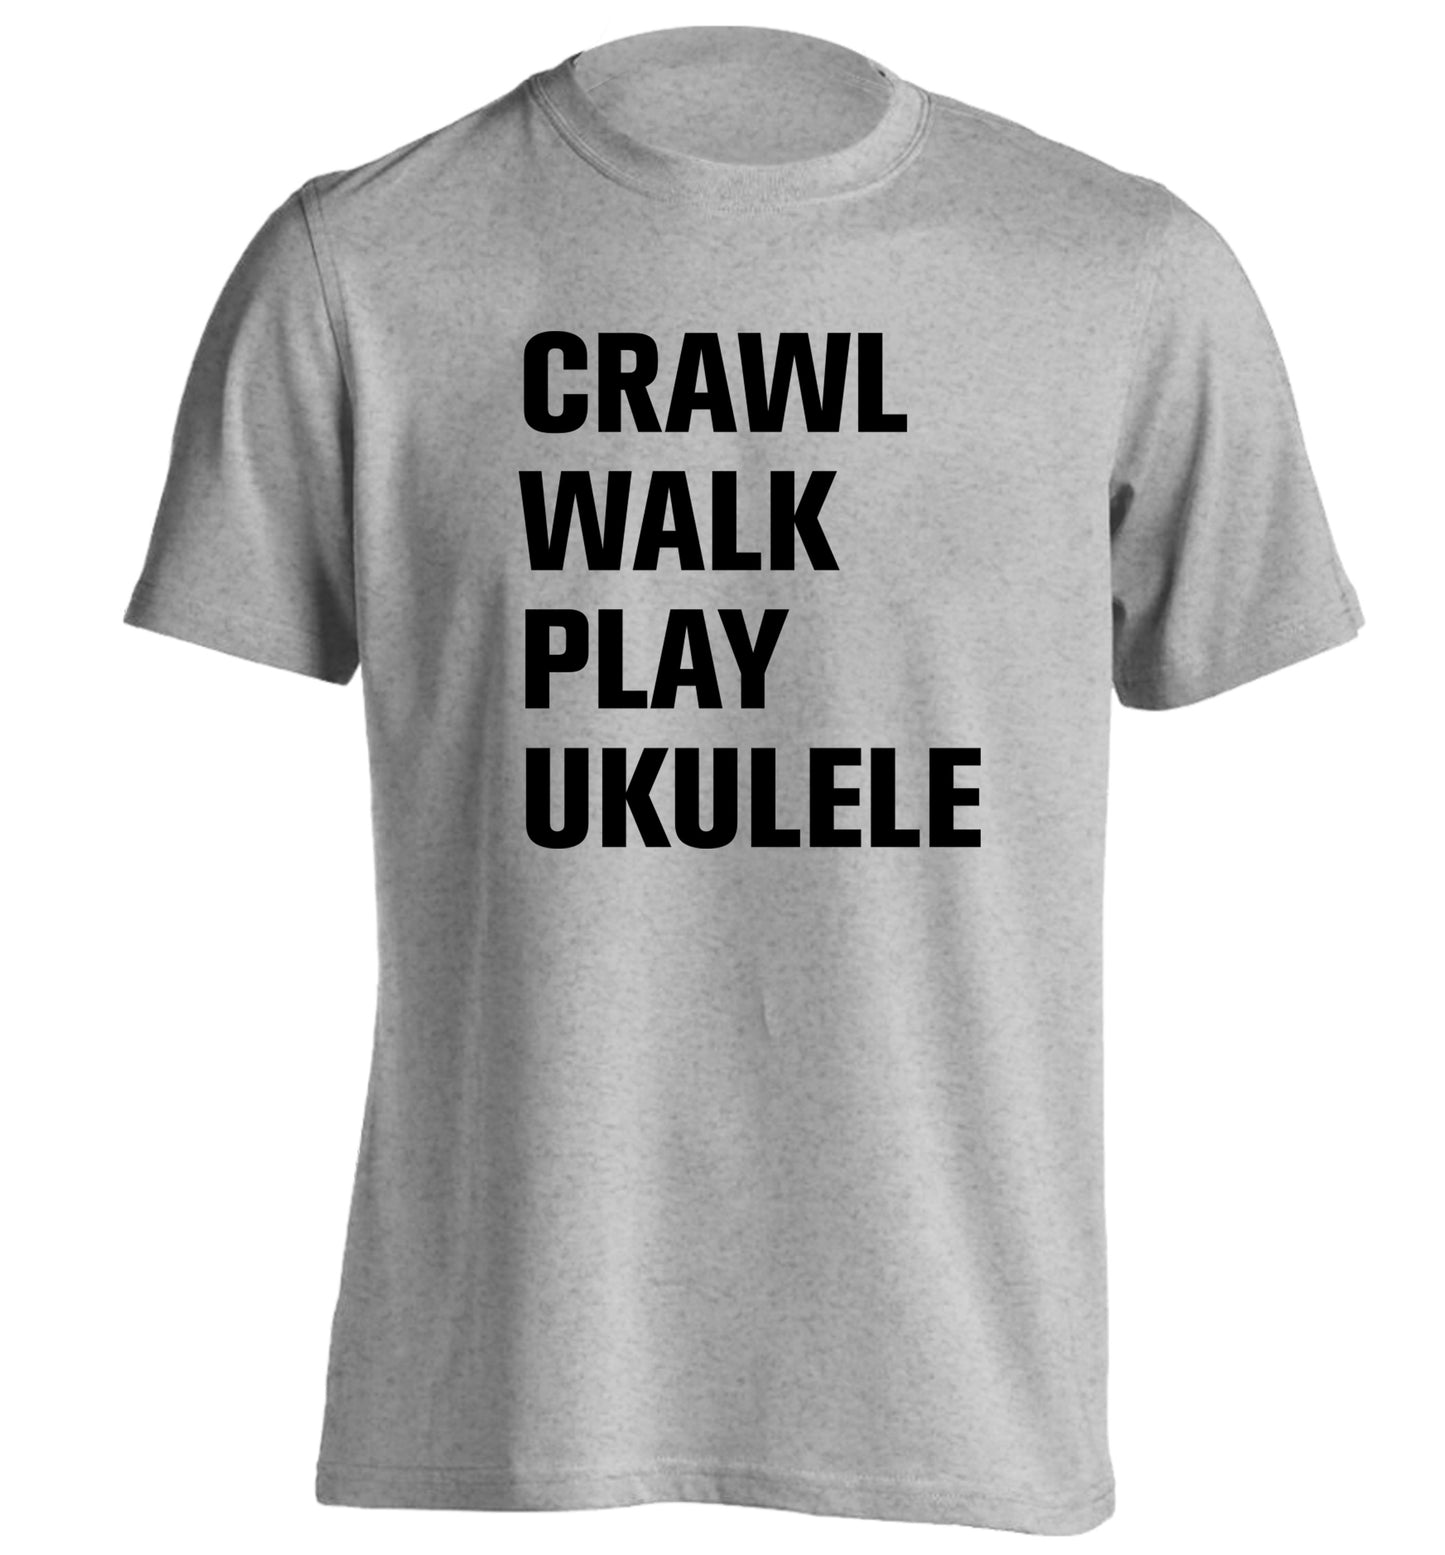 Crawl walk play ukulele adults unisex grey Tshirt 2XL